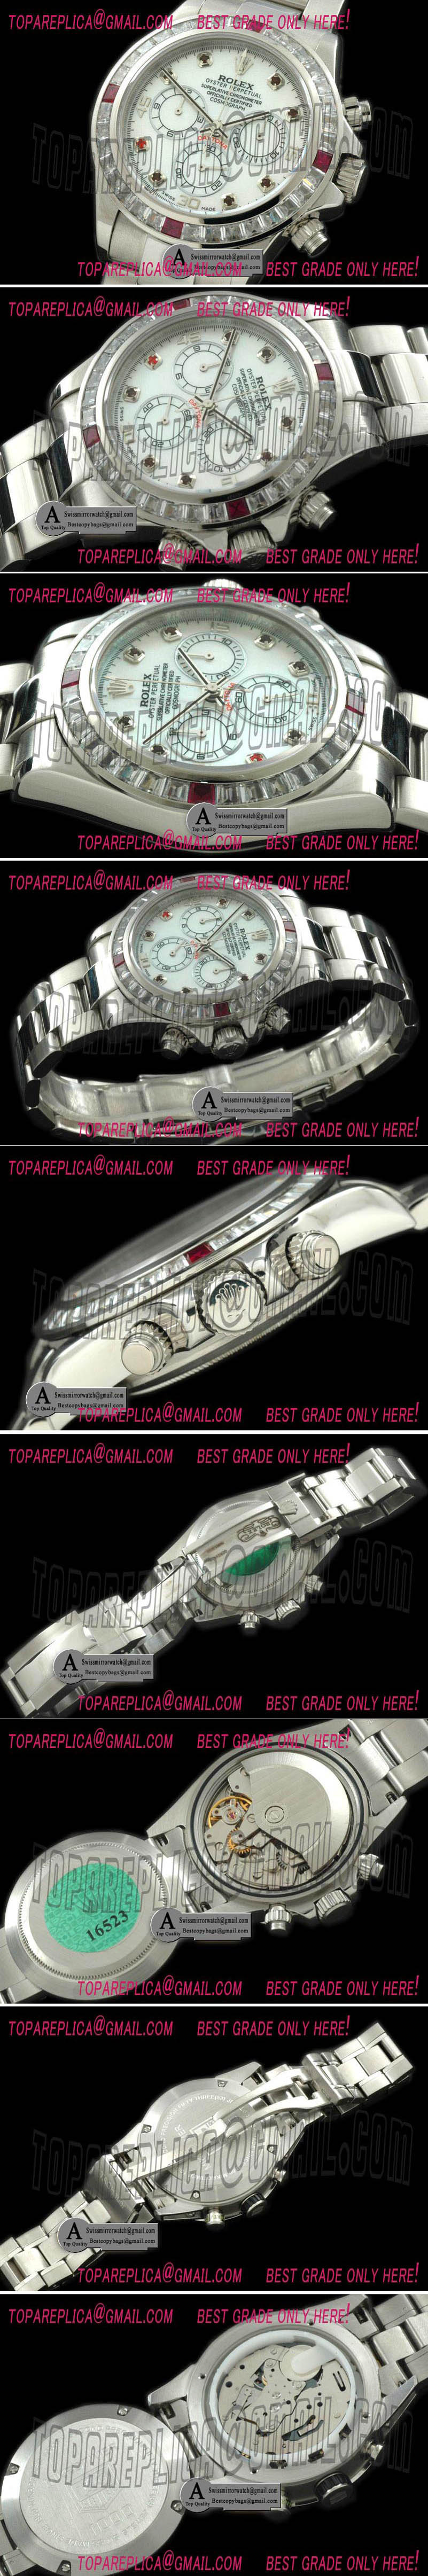 Rolex Daytona SS/SS/Sq Cut Bezel MOP White A-7750 Secs @ 6 Replica Watches